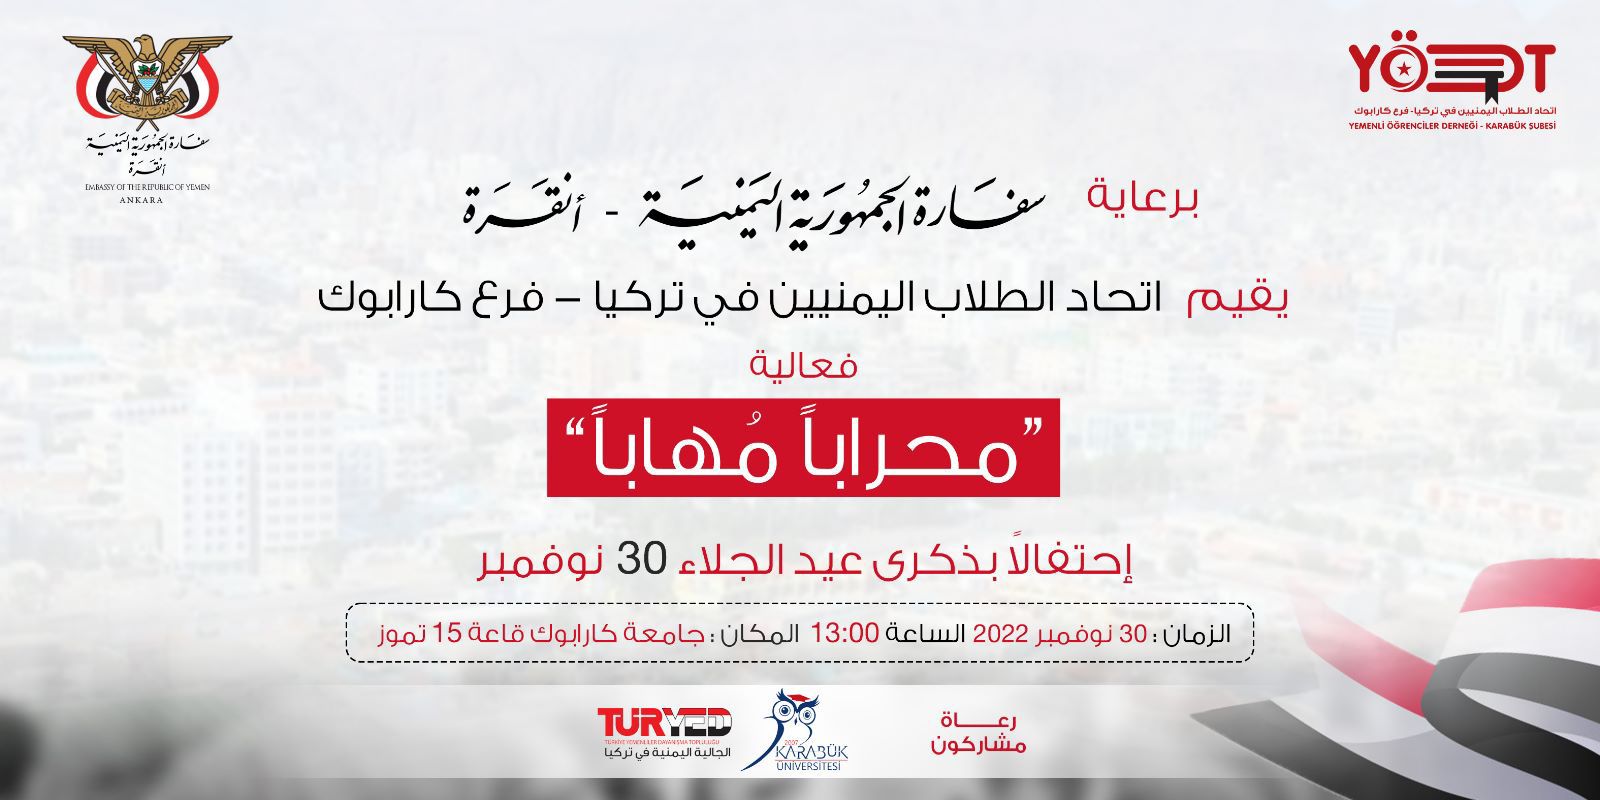  برعاية سفارة الجمهورية اليمنية في انقرة يقيم اتحاد الطلاب اليمنين في تركيا - فرع كارابوك فعالية (محاربا مهابا) احتفالا بذكرى عيد الجلاء 30 نوفمبر 